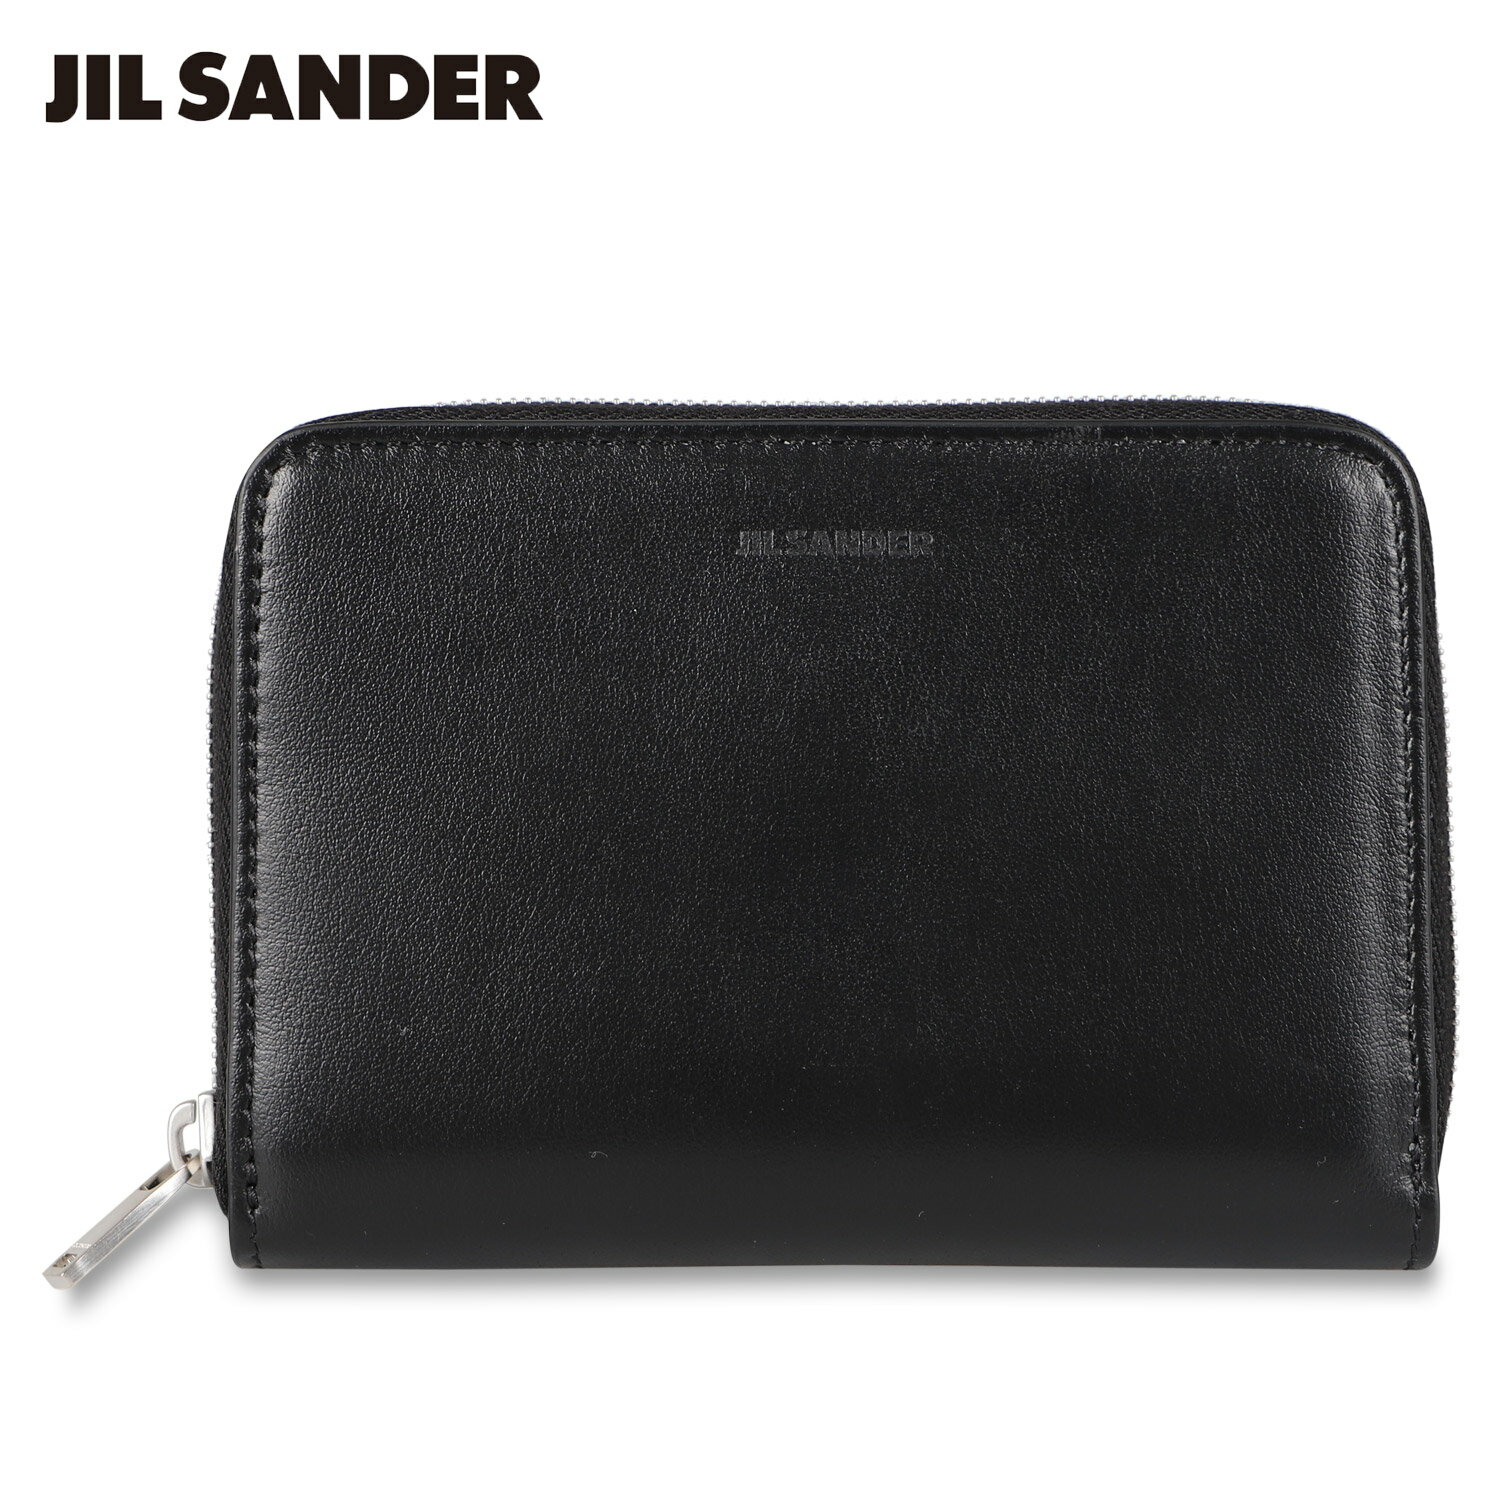 ジルサンダー JIL SANDER 財布 二つ折り ポケット ジップアラウンド ウォレット メンズ 牛革 ラウンドファスナー POCKET ZIP AROUND WALLET ブラック 黒 JSMU840111 MUS00008N